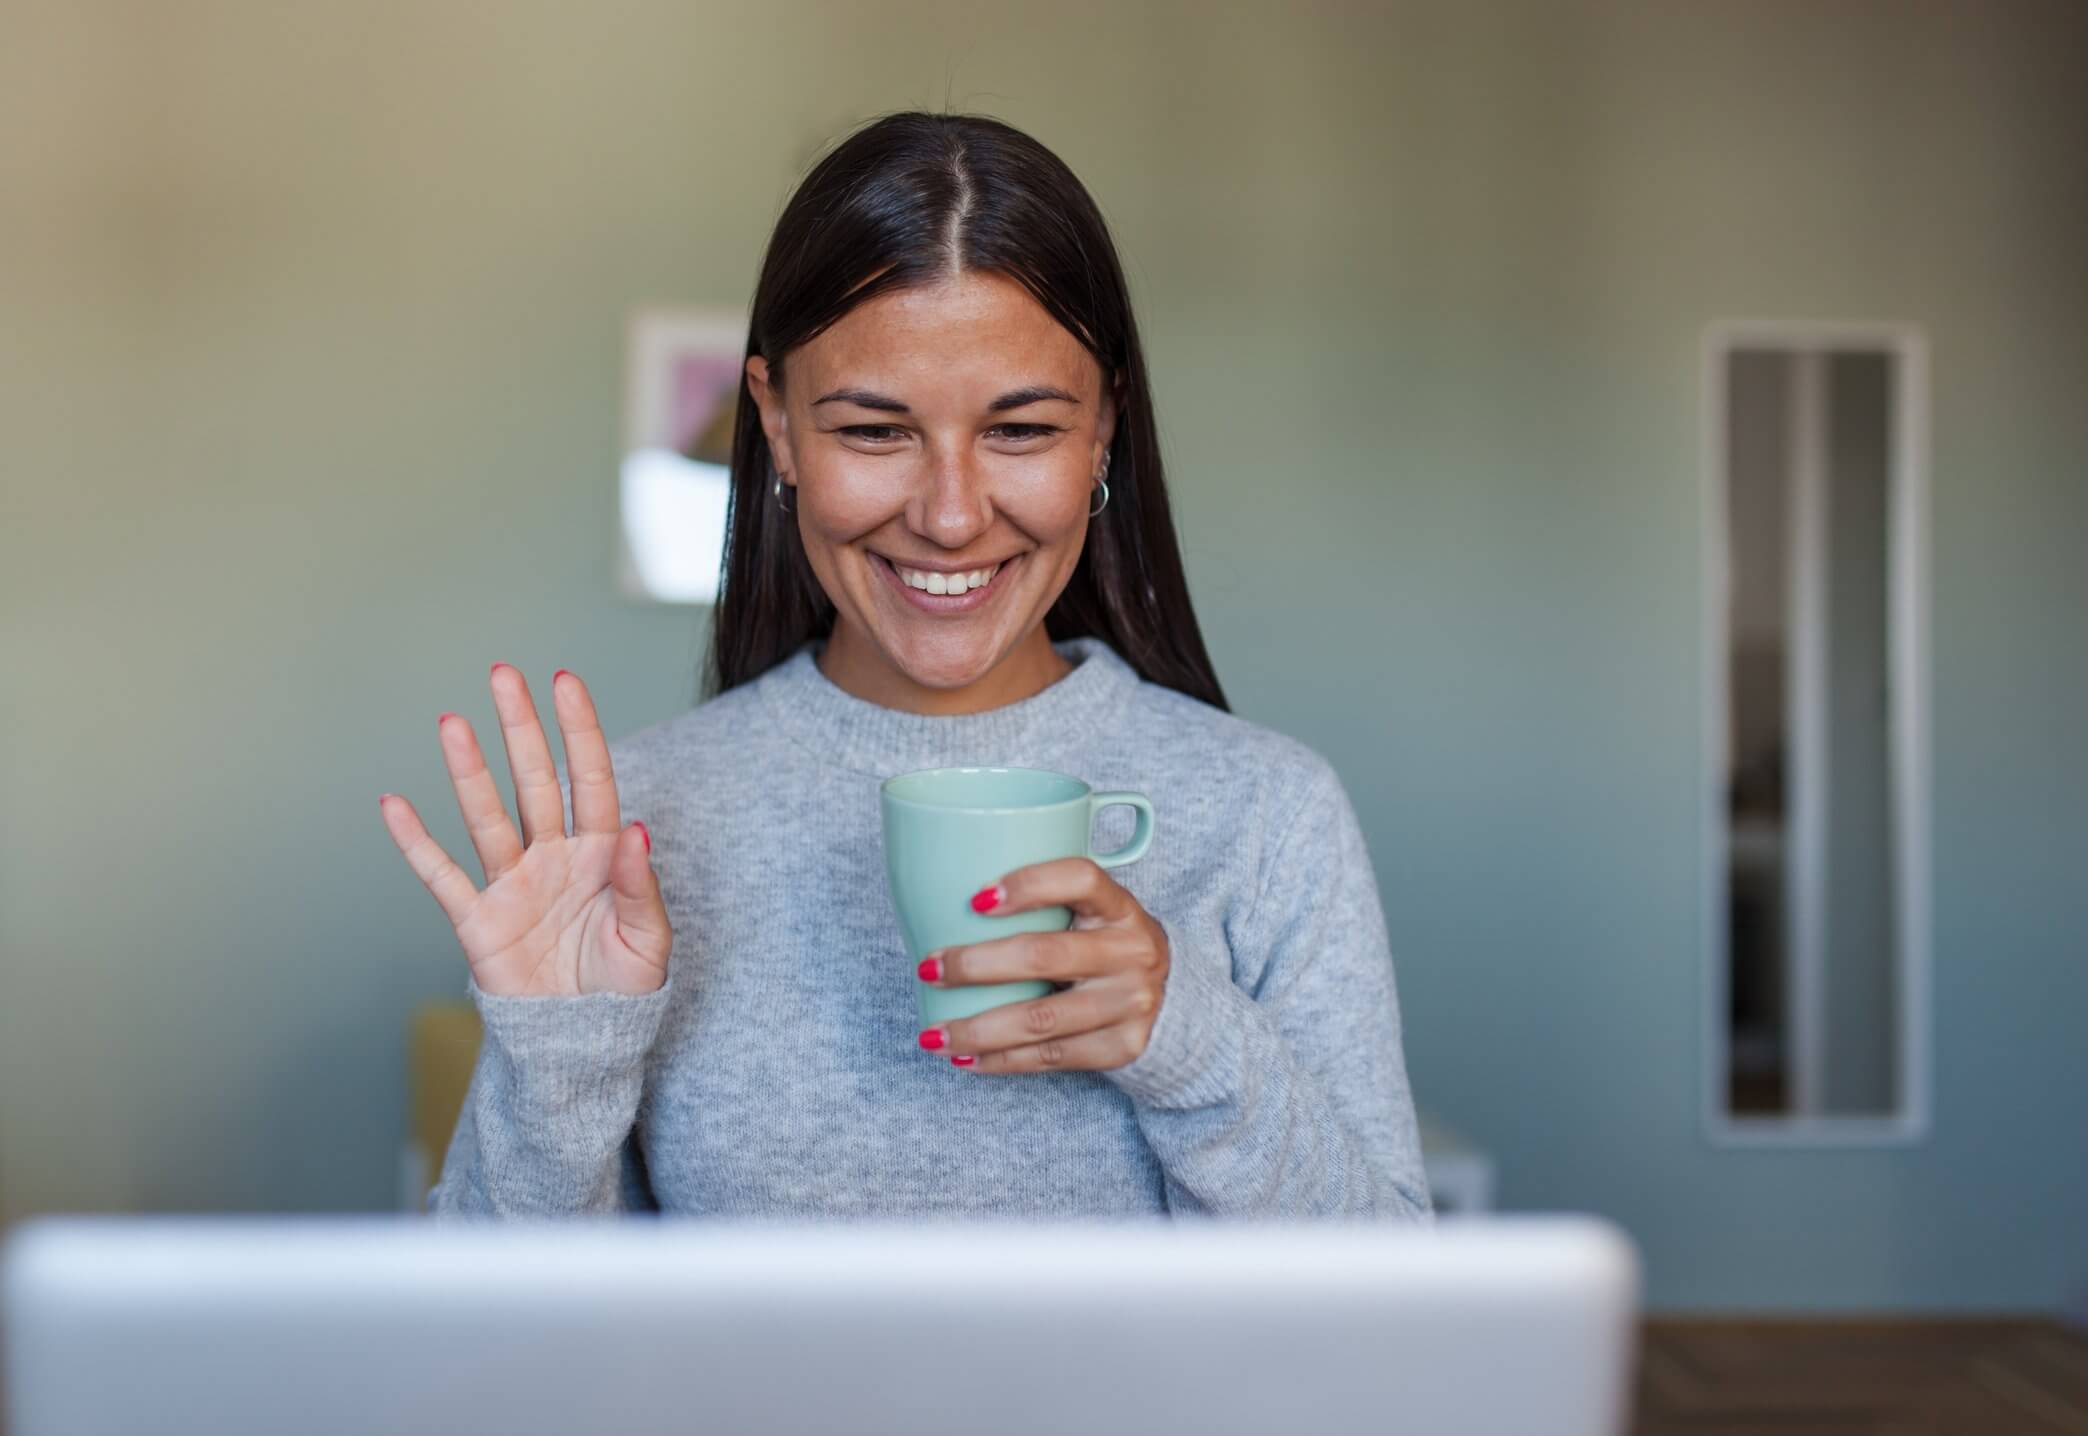 Woman holding mug and smiling and waving at laptop